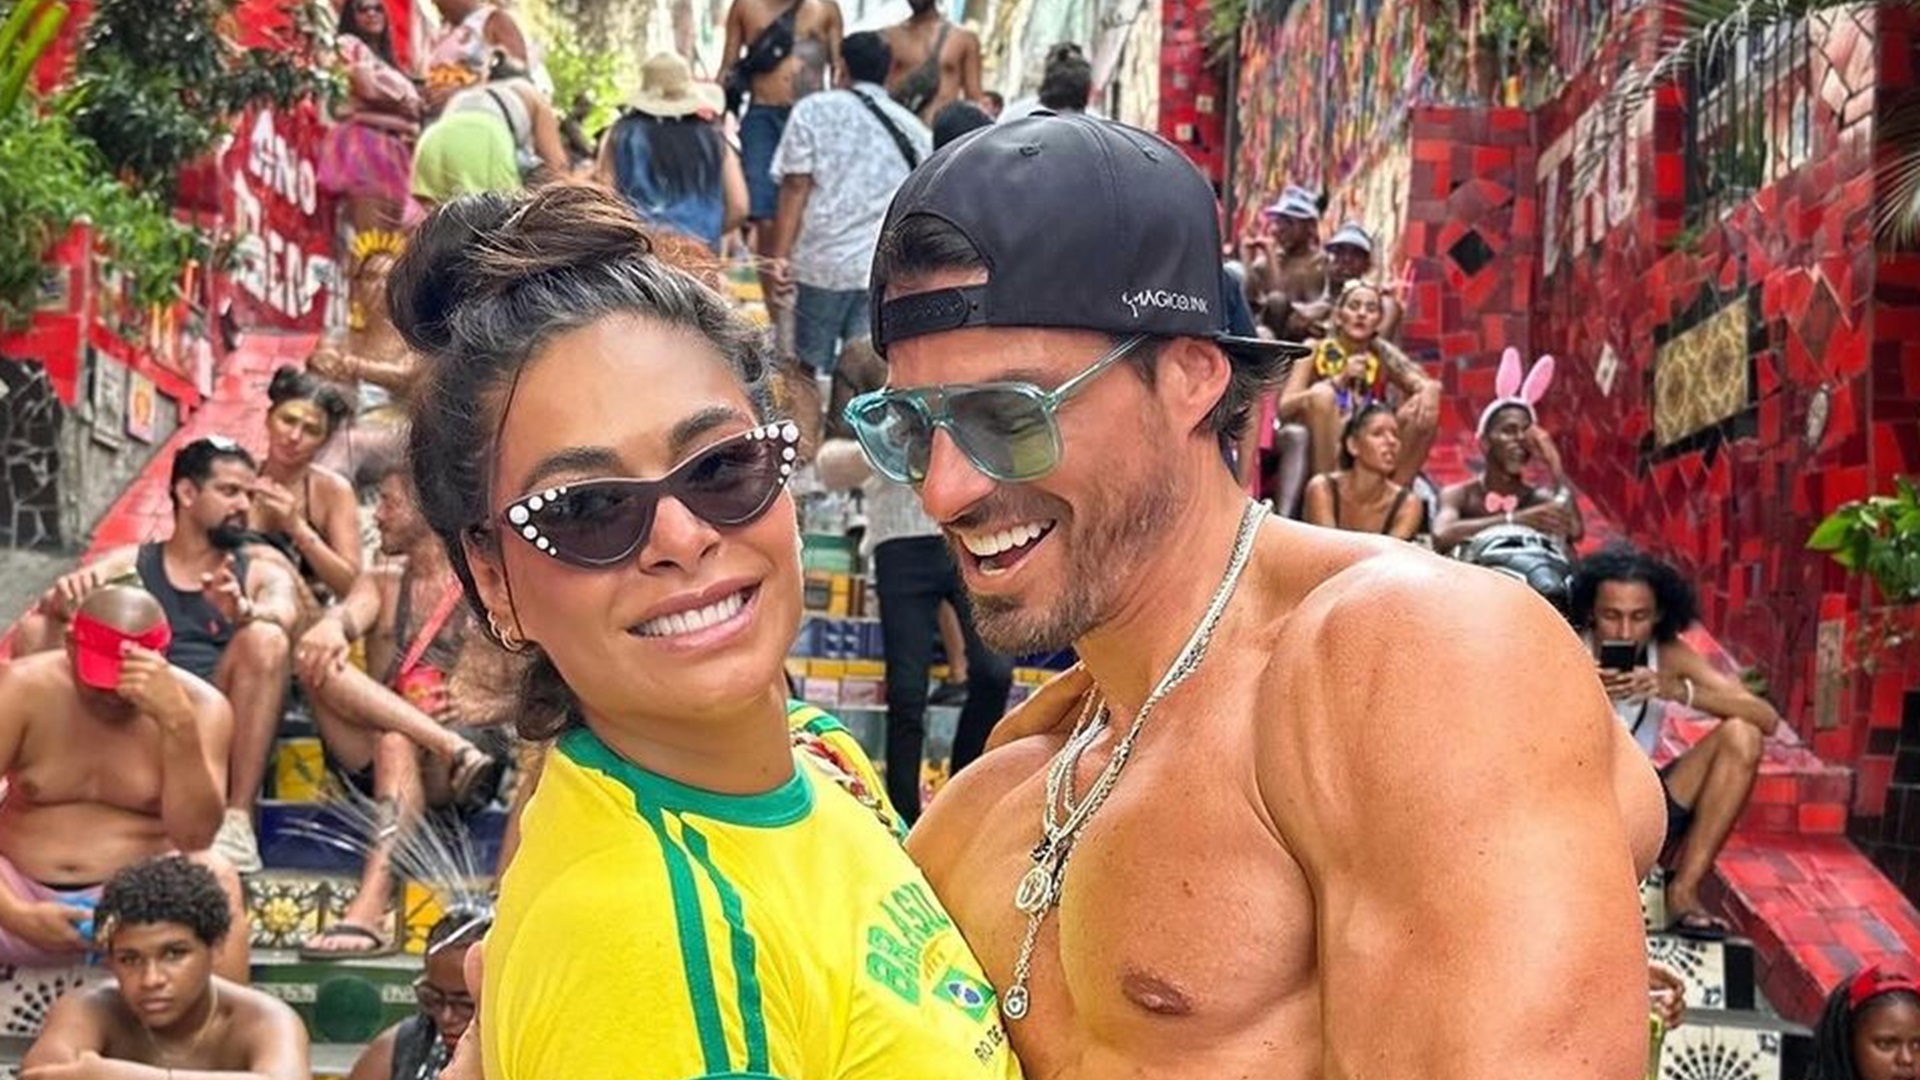 Las fotos de Galilea Montijo y su novio en Brasil